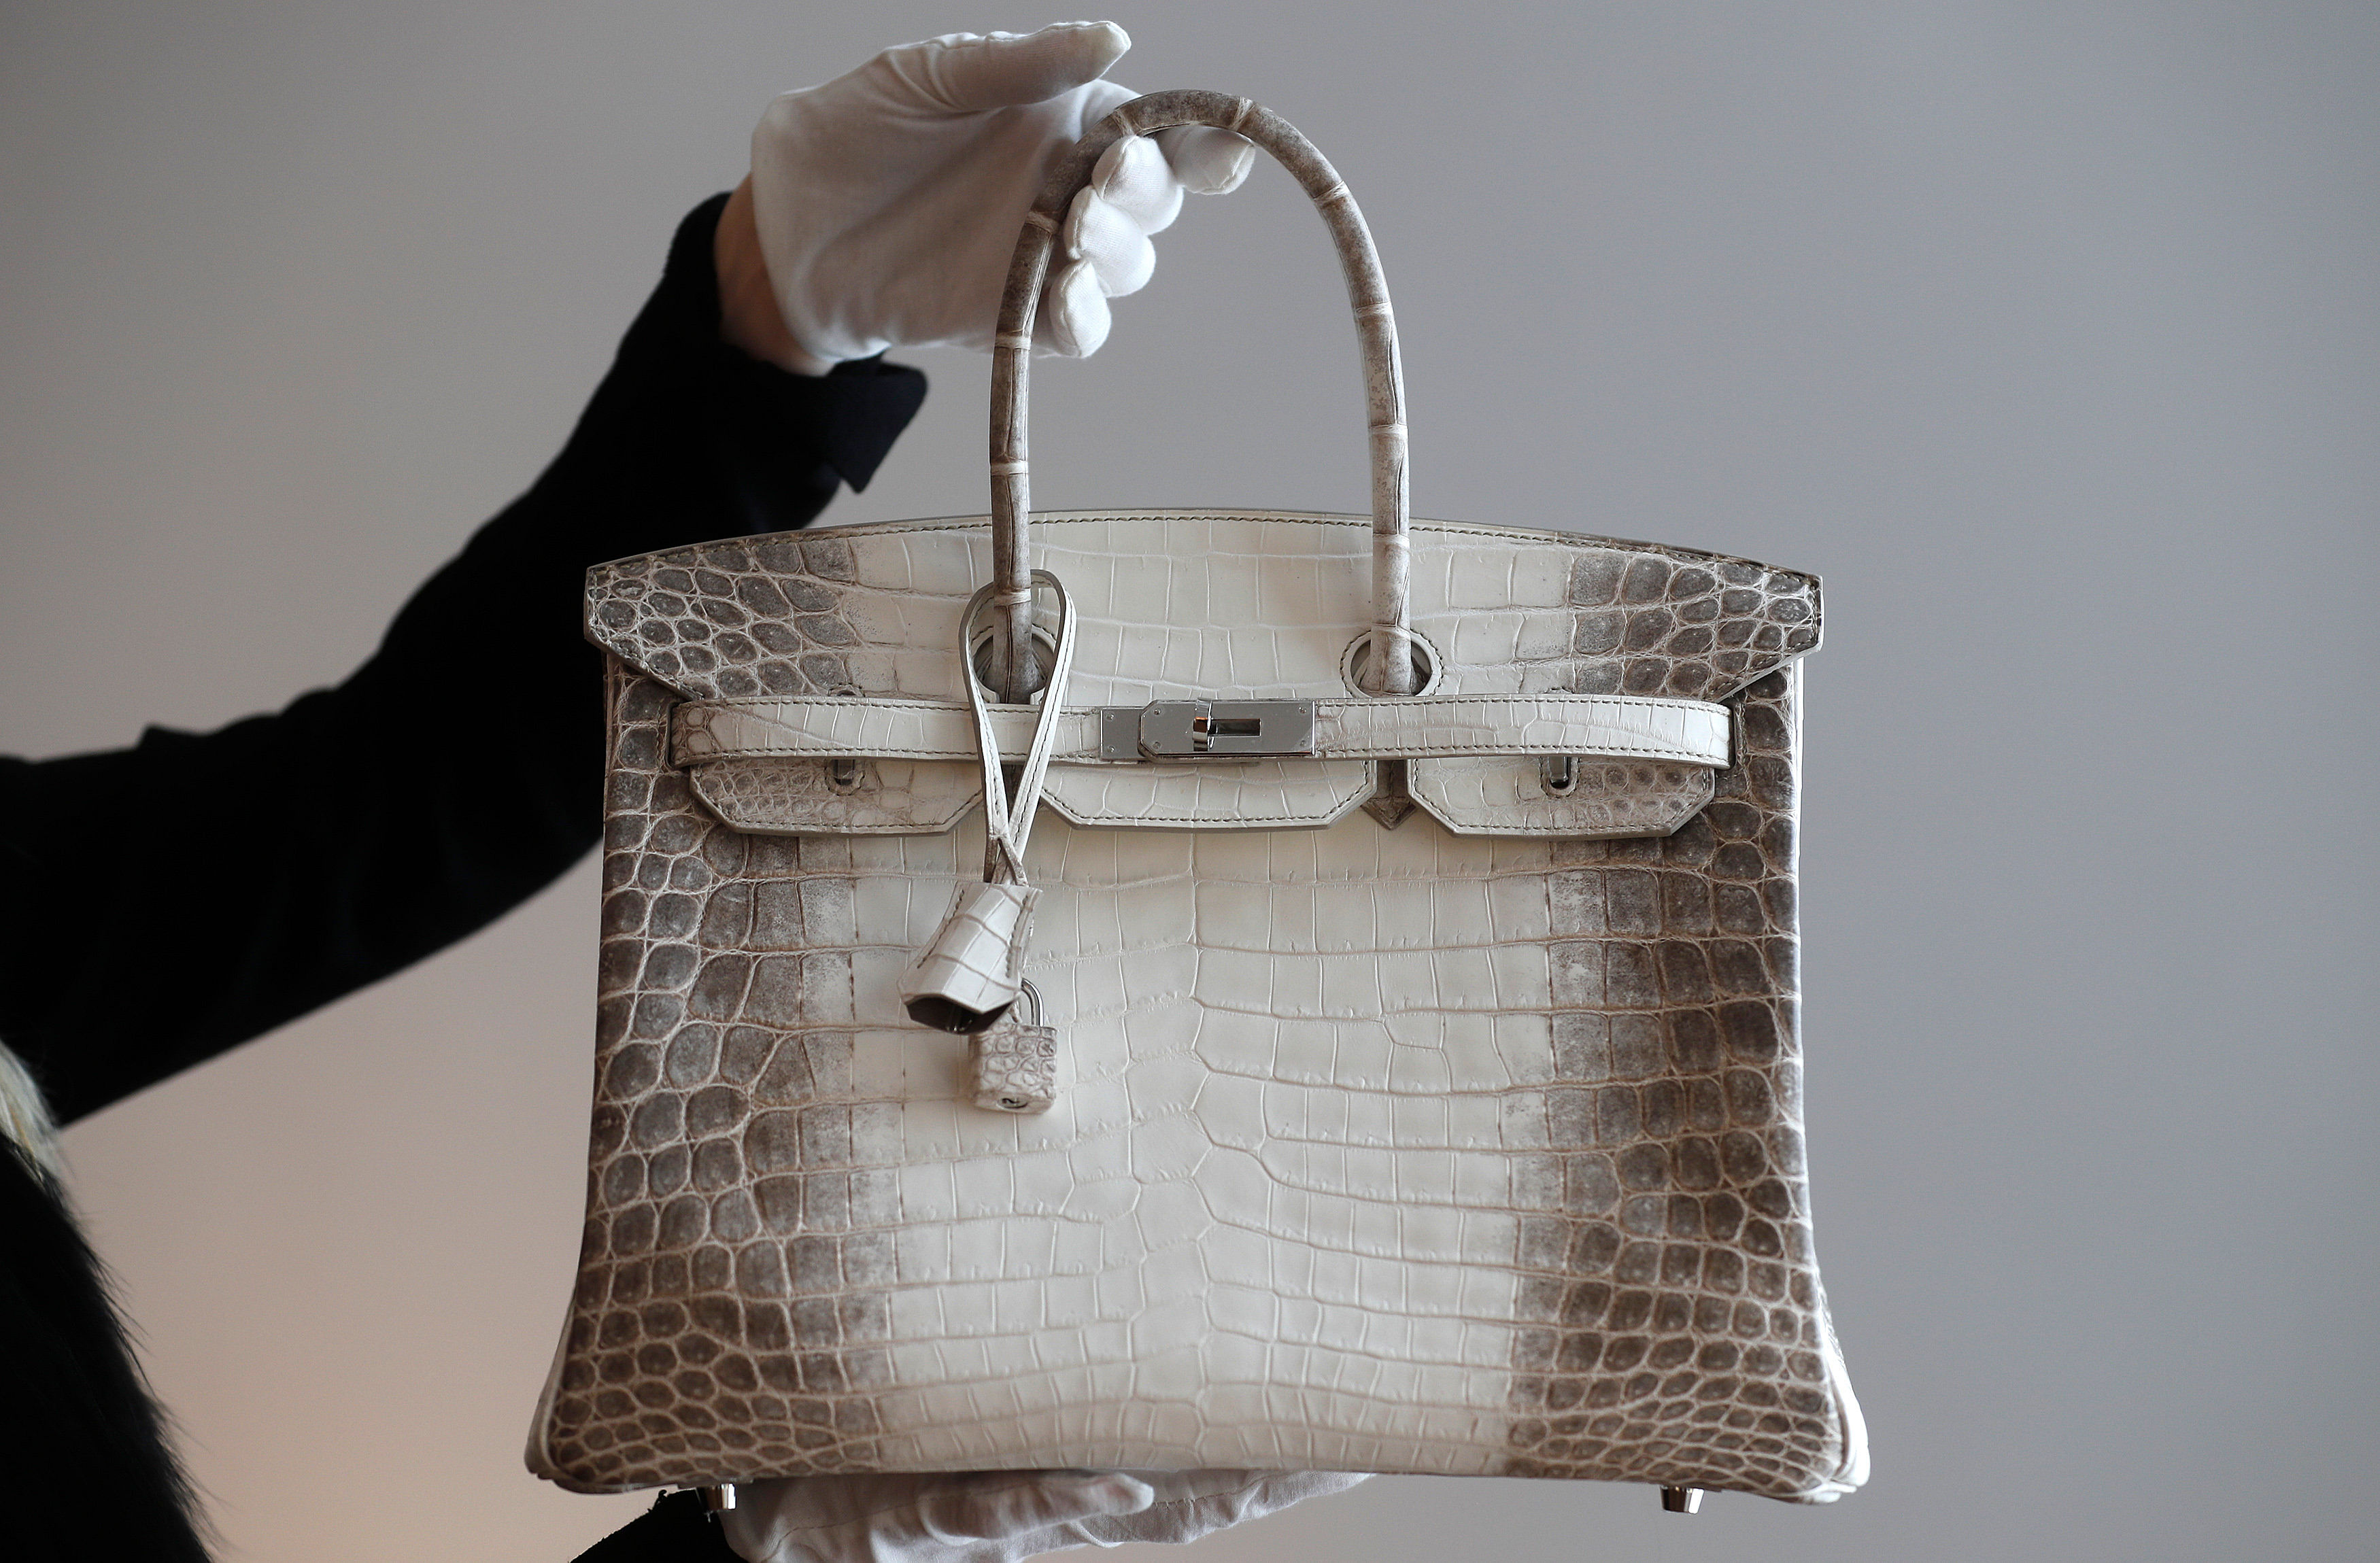 Fashion Insanity: The $2 Million Birkin Bag